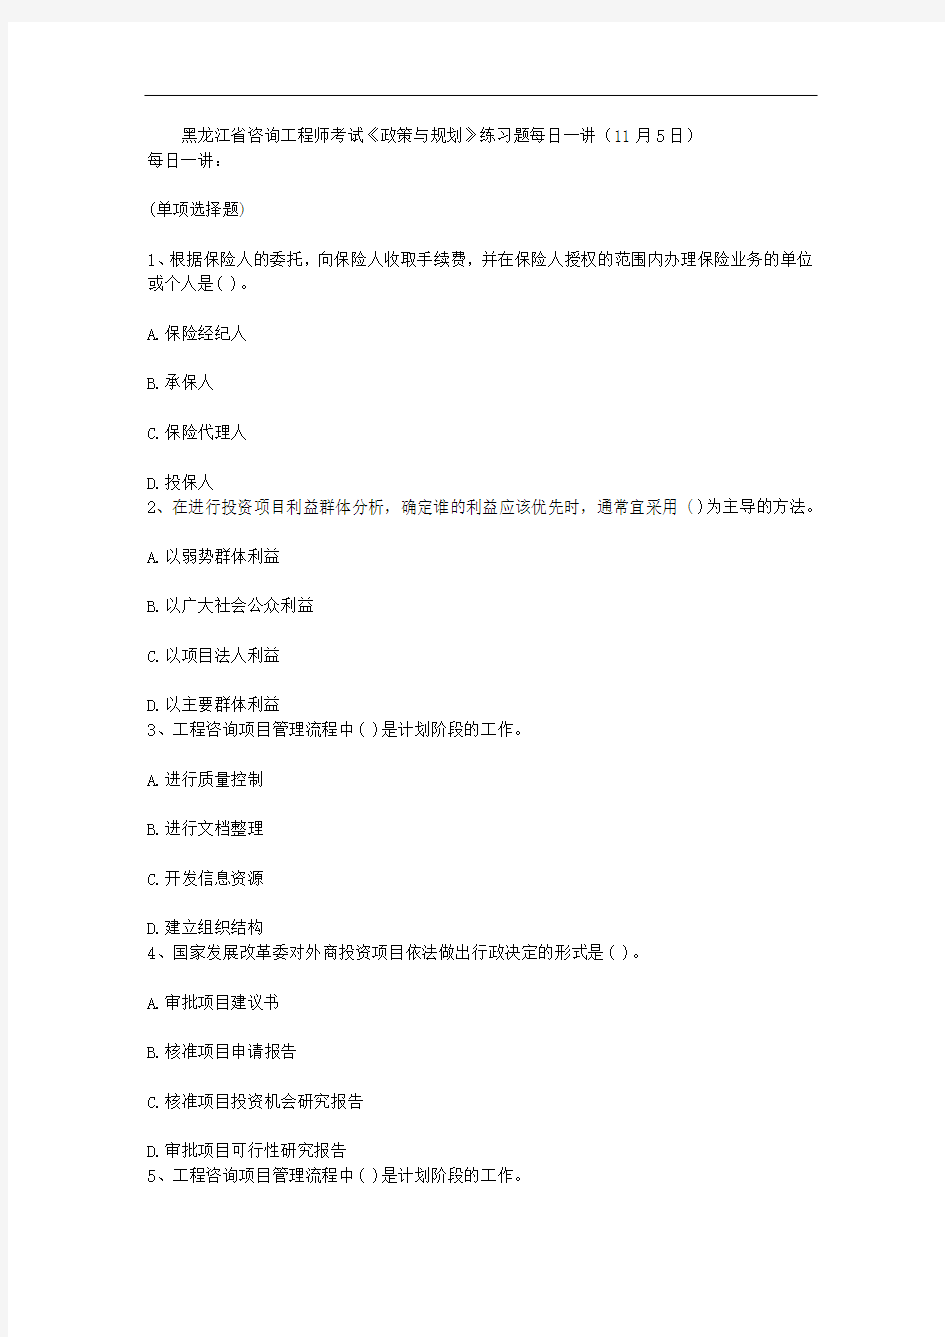 黑龙江省咨询工程师考试《政策与规划》练习题每日一讲(11月5日)